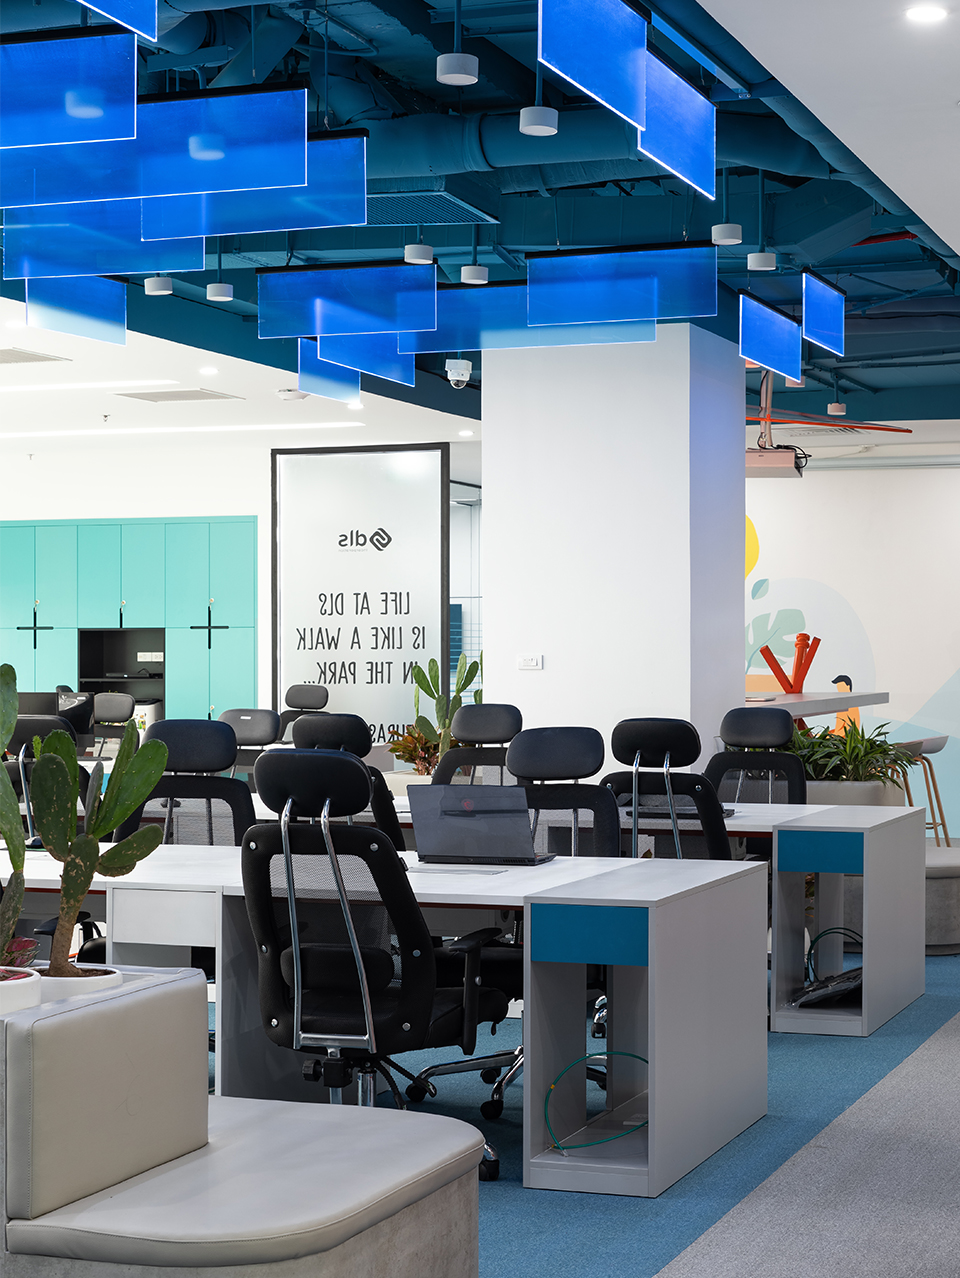 Khu vực làm việc của các nhân viên tại văn phòng công ty DLS với sự kết hợp tông màu xanh trắng tạo cảm giác mới mẻ, công nghệ